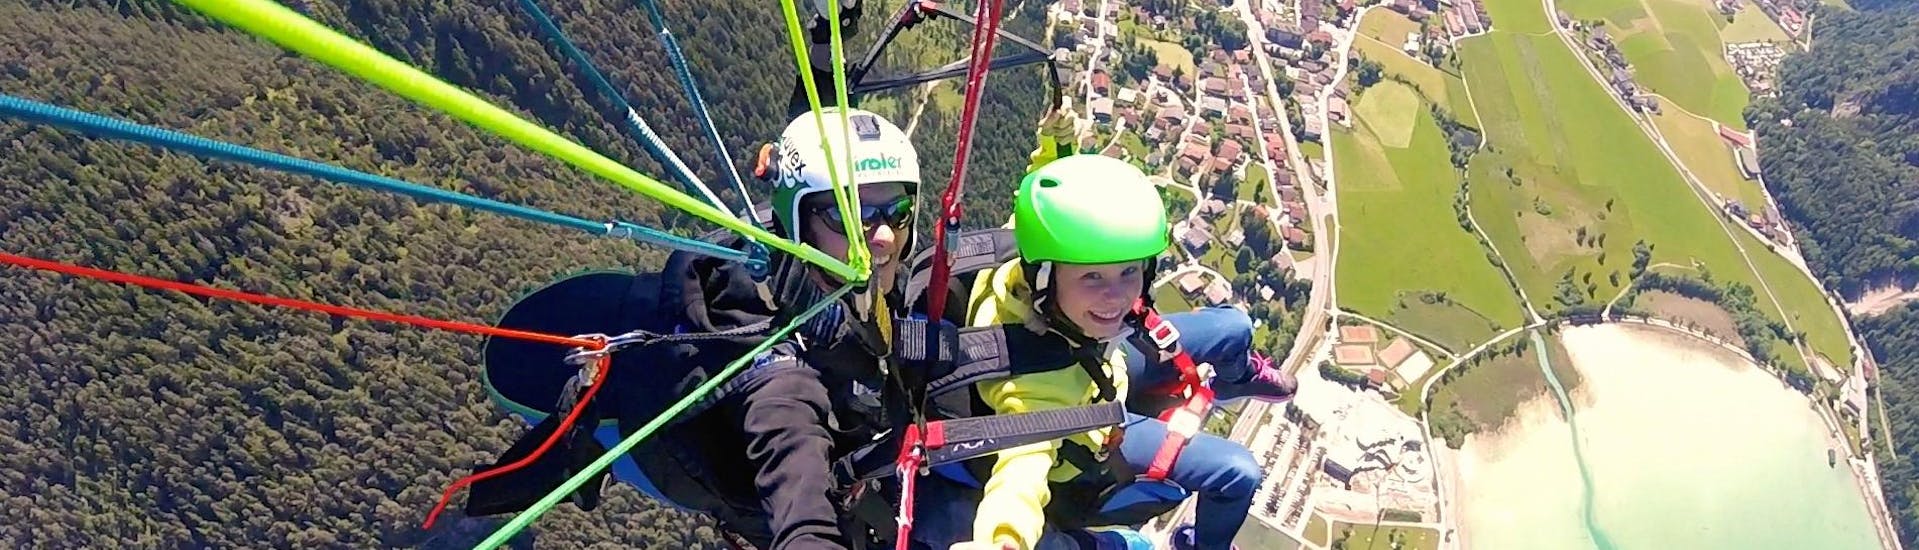 Tandem Paragliding "Thermische Vlucht" - Achenmeer